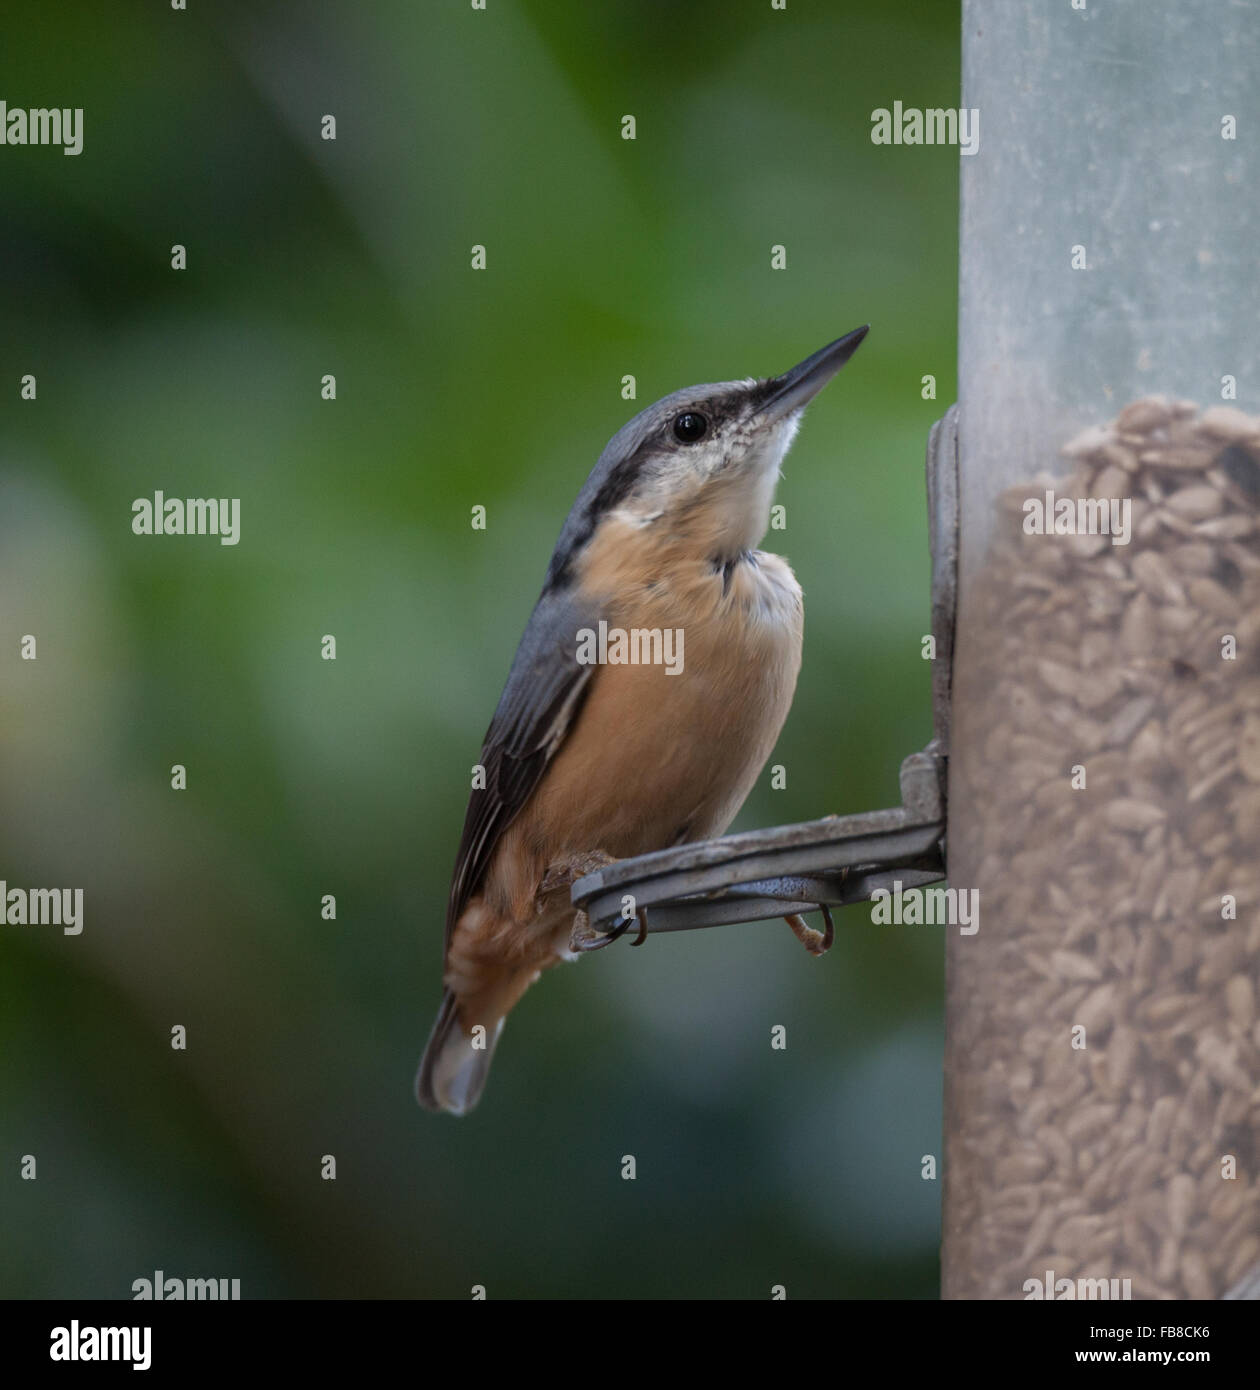 Nut hatch at bird feeder Stock Photo